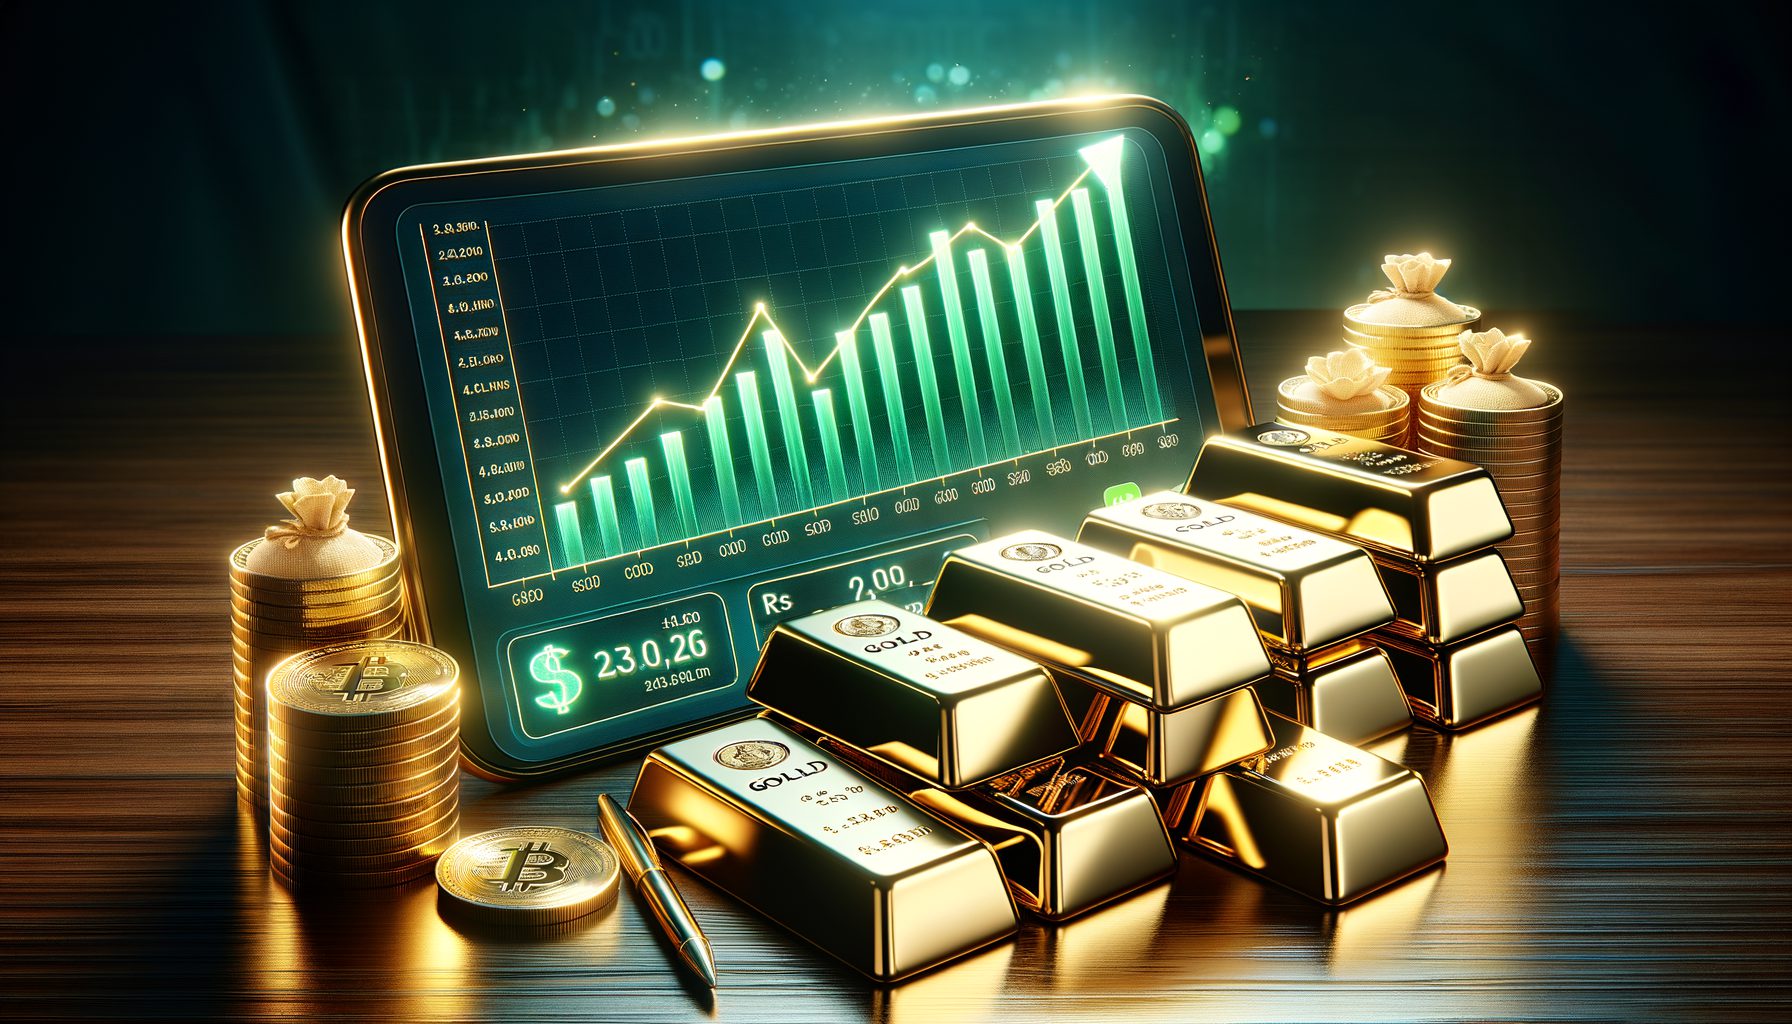 تحلیلگر توضیح می دهد که بازار سهام ایالات متحده را کنار بگذارید و در طلا سرمایه گذاری کنید در سال 2024: تحلیلگر توضیح می دهد که بازار سهام ایالات متحده را کنار بگذارید و در طلا سرمایه گذاری کنید.